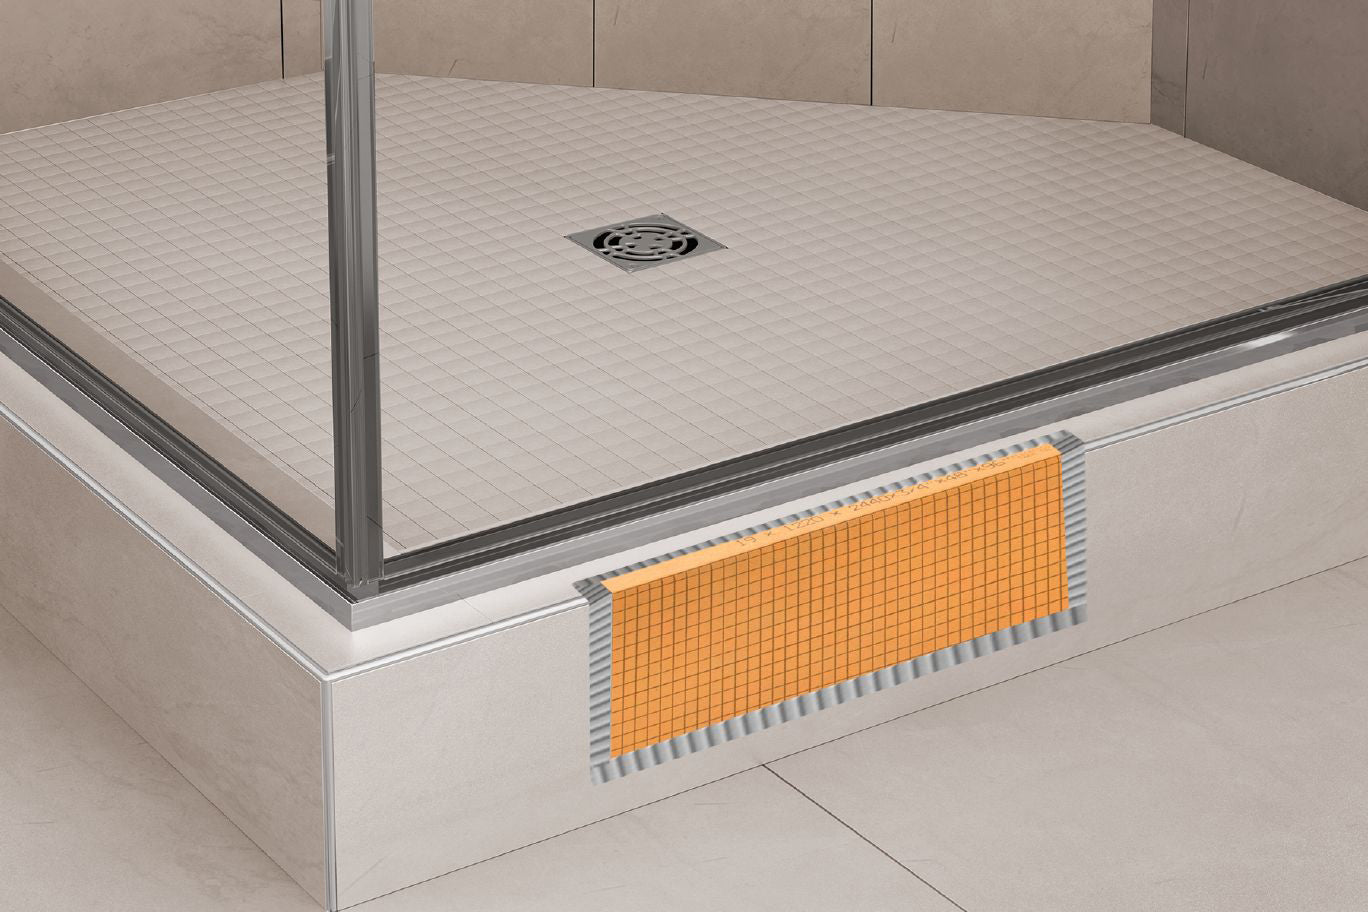 
                  
                    Schluter® Kerdi Board Waterproof Shower Curb
                  
                